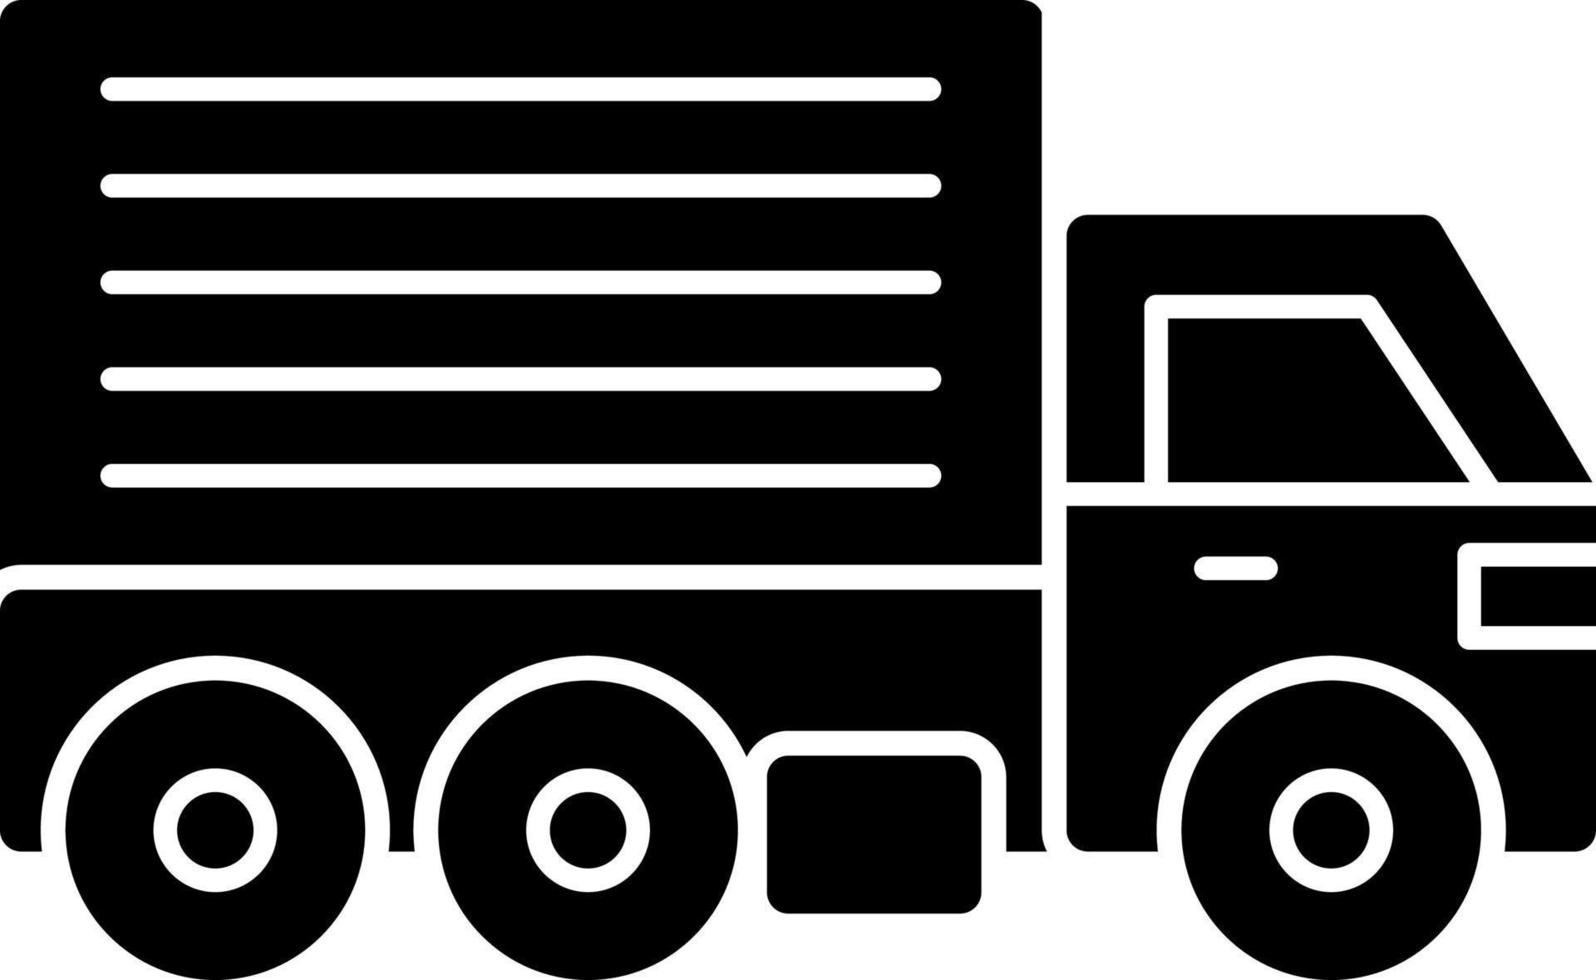 diseño de icono de vector de camión de carga